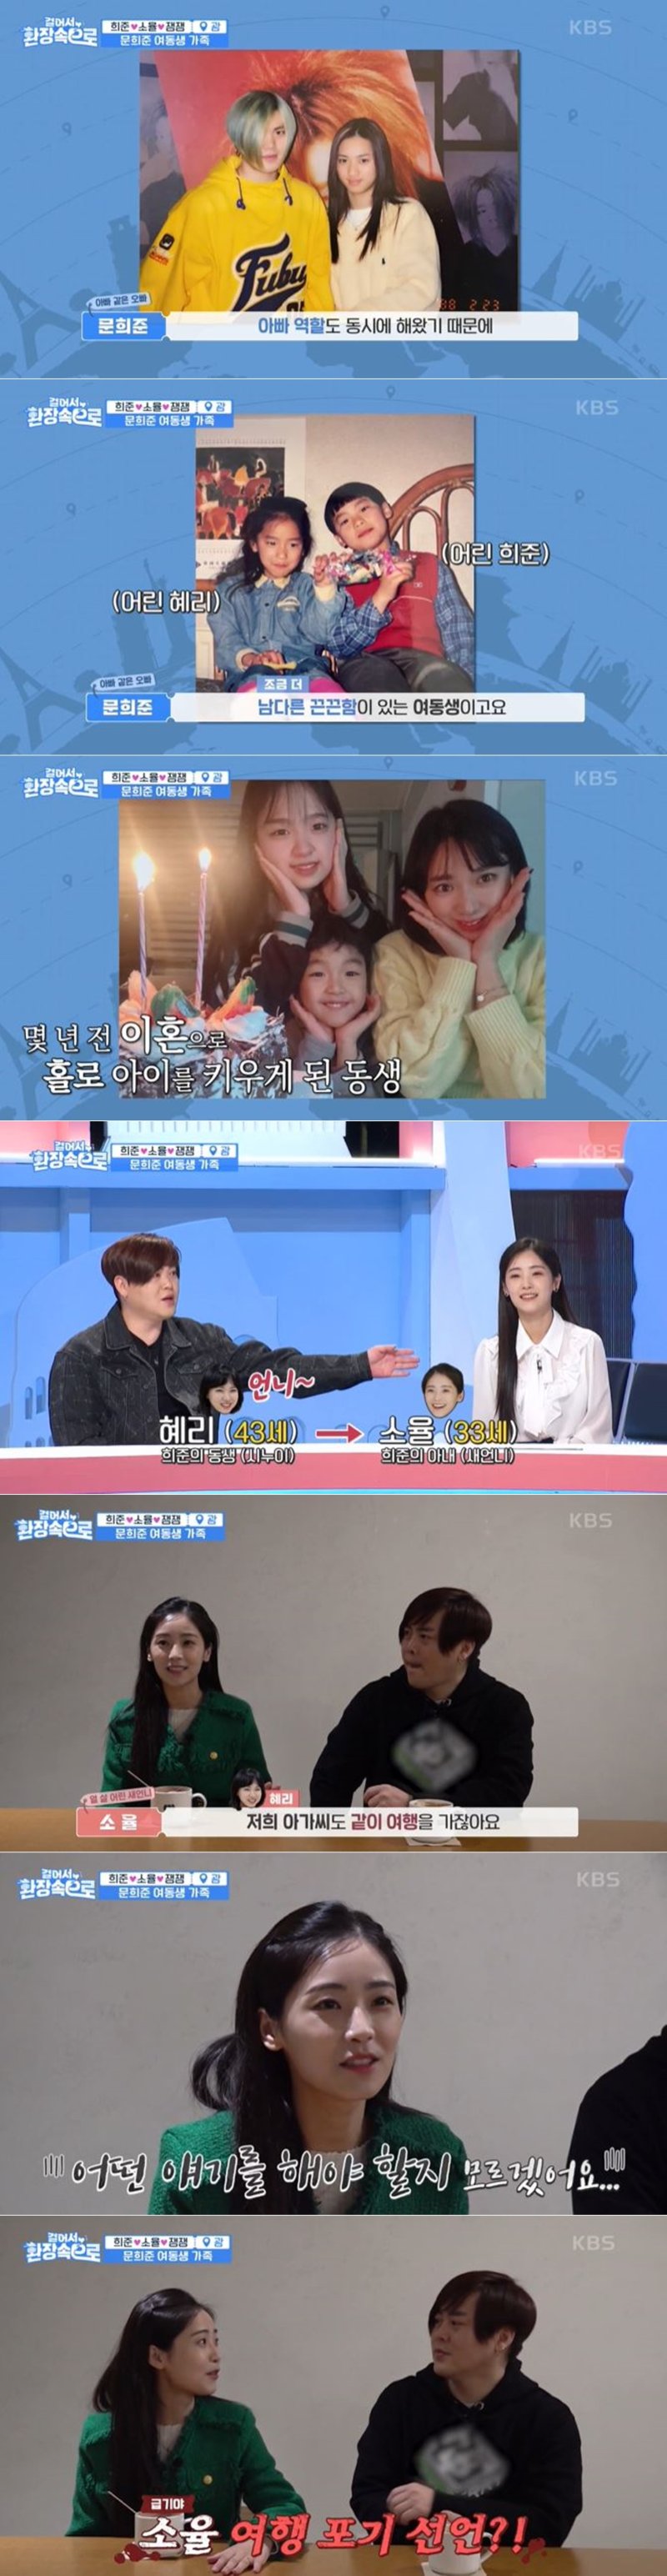 KBS2 '걸어서 환장 속으로' 방송 화면 갈무리